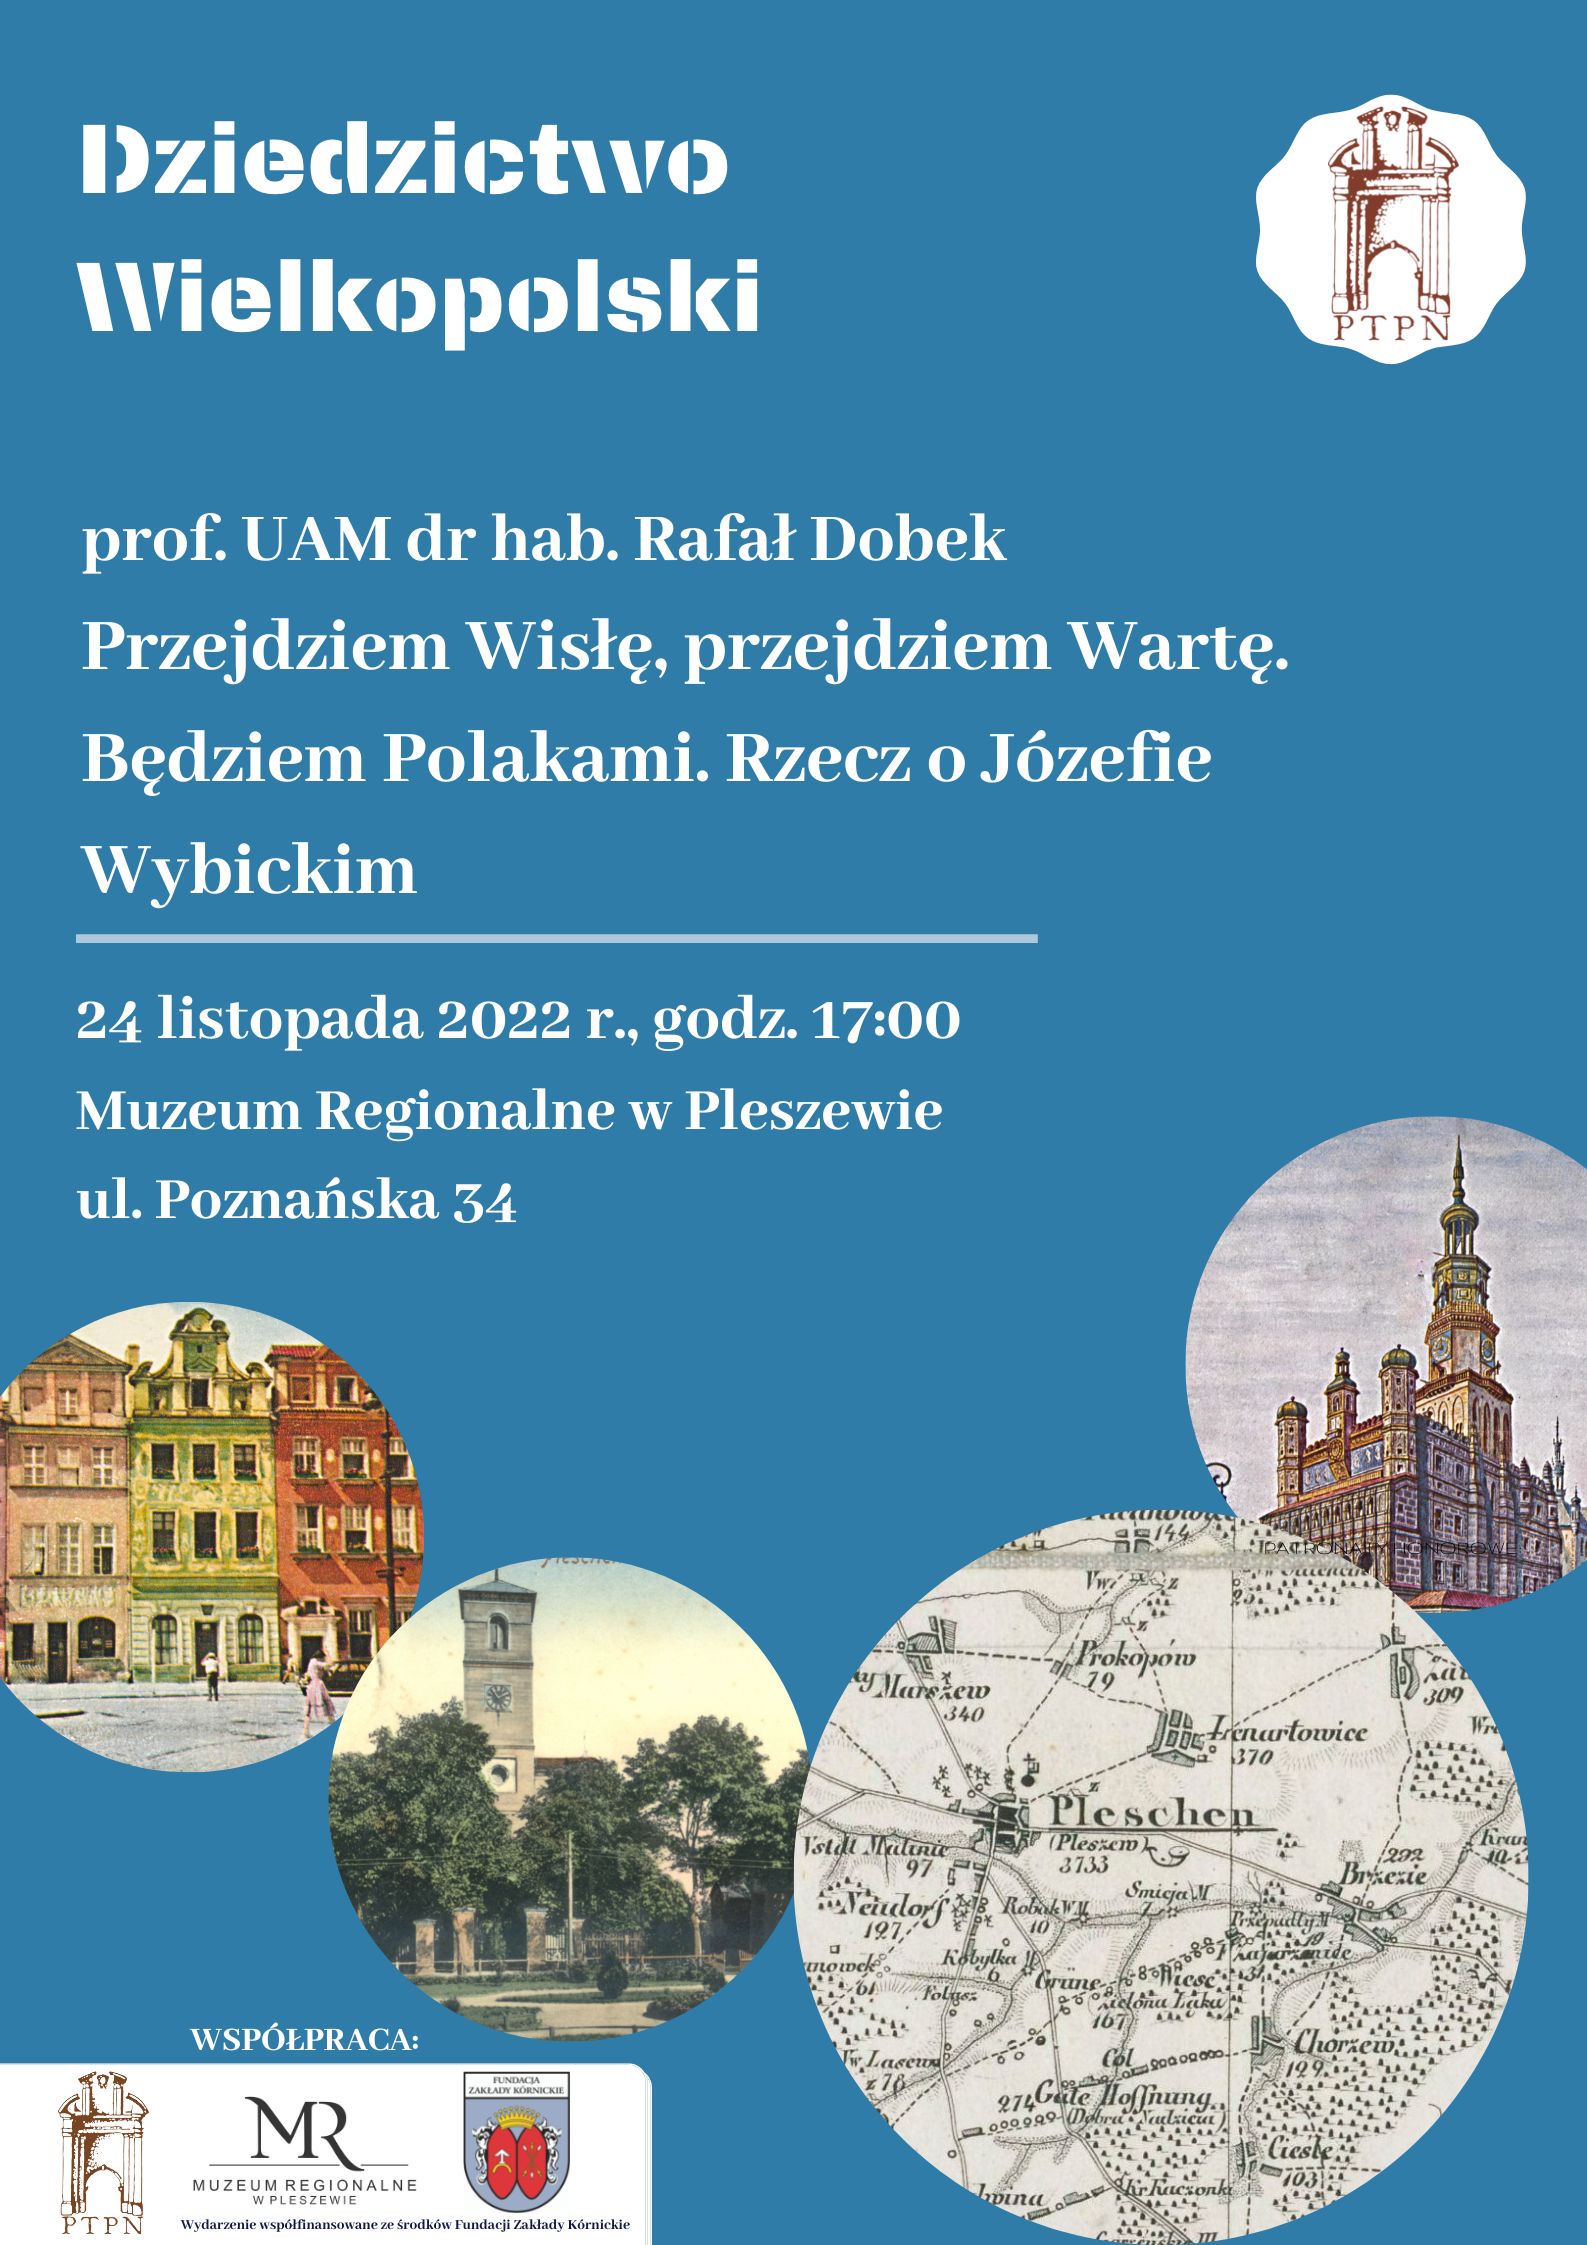 Plakat wykładu Dziedzictwo Wielkopolski odbywającego się w Muzeum Regionalnym w Pleszewie 24 listopada 2022 o godzinie 17:00